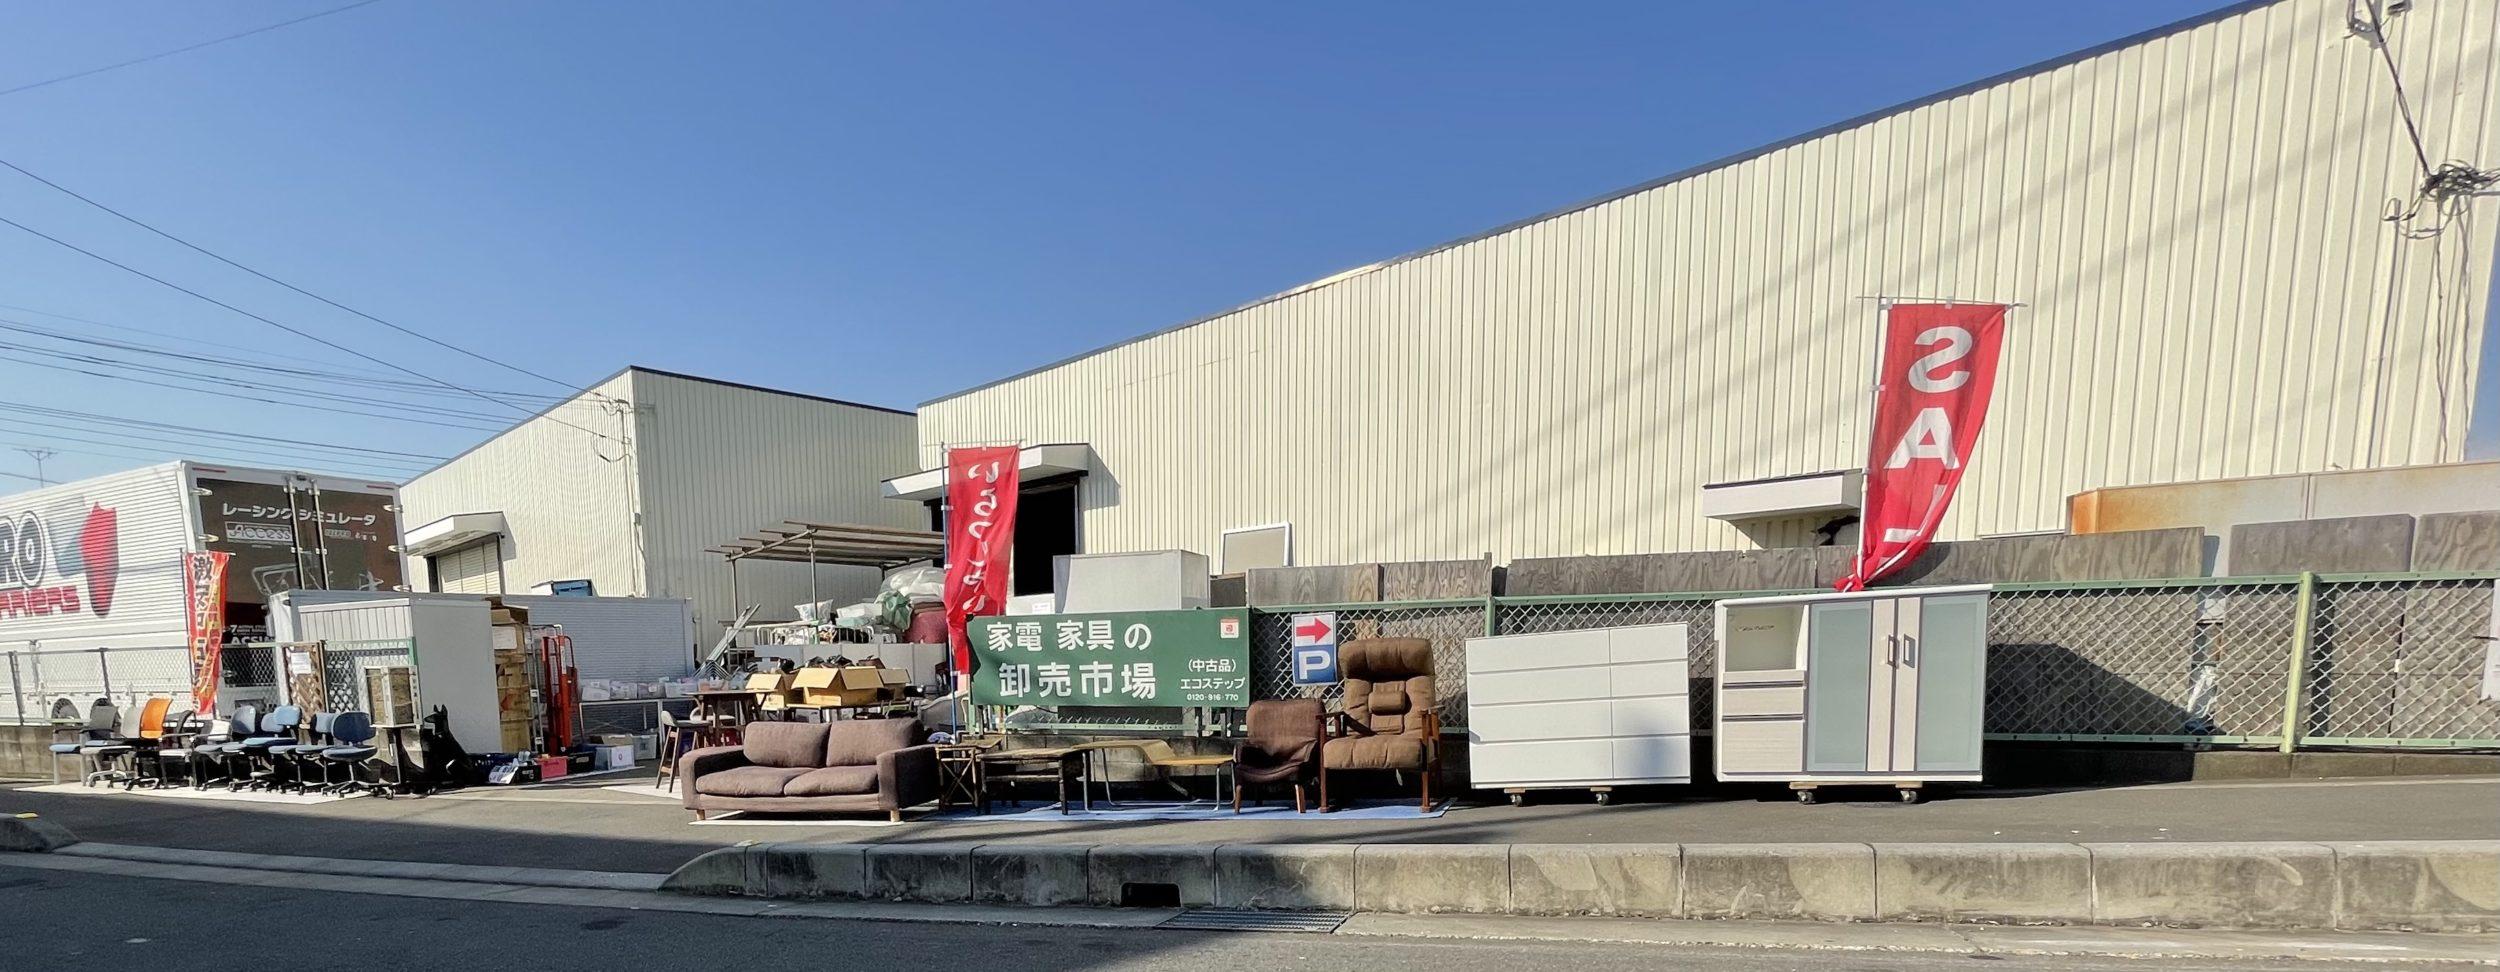 実店舗があるエコステップ | 埼玉県の不用品回収・買取はエコステップ！
